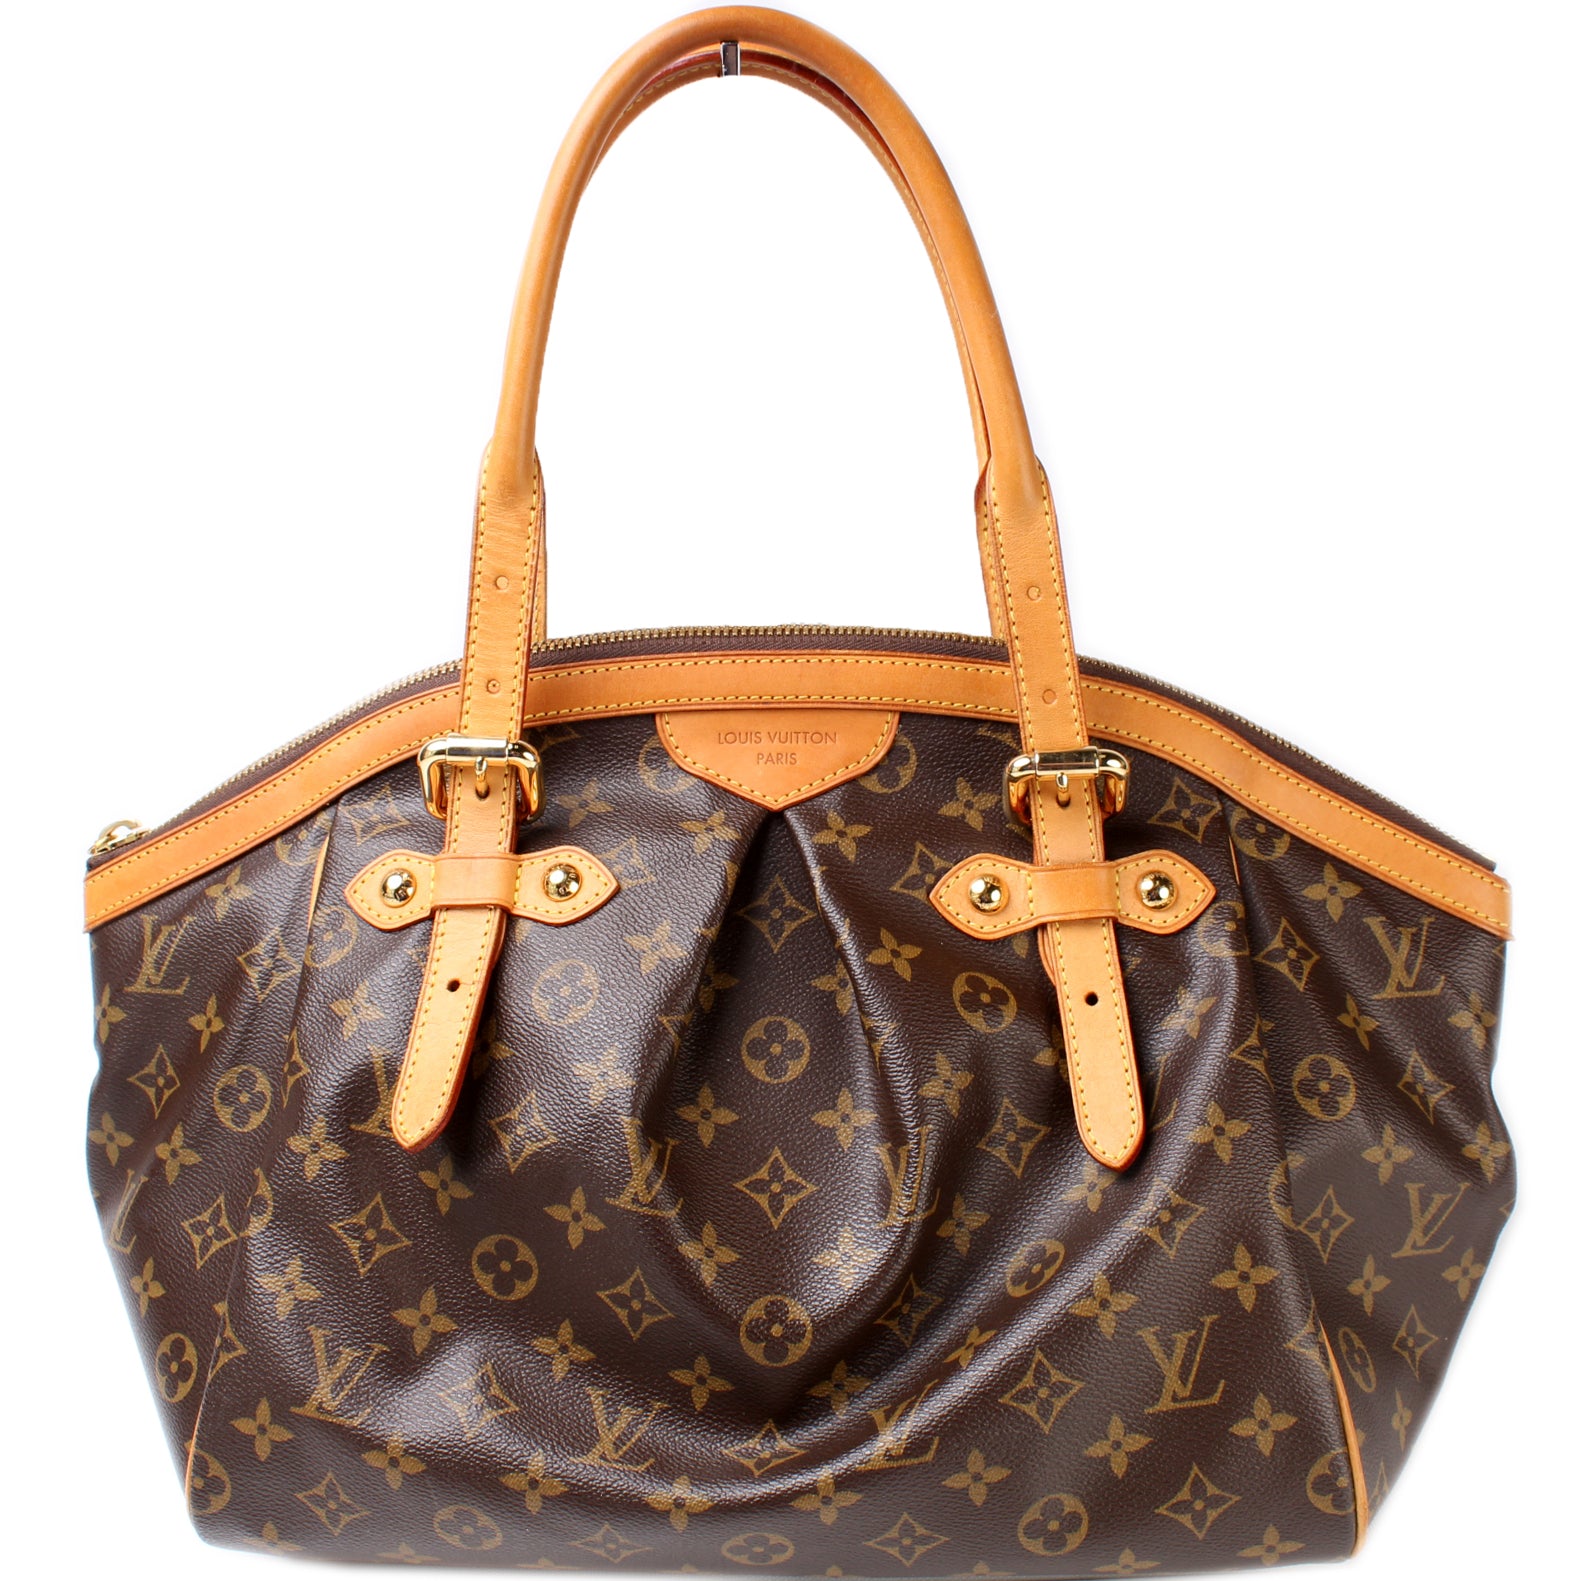 What's inside my bag? Louis Vuitton Tivoli GM Handbag - Showing